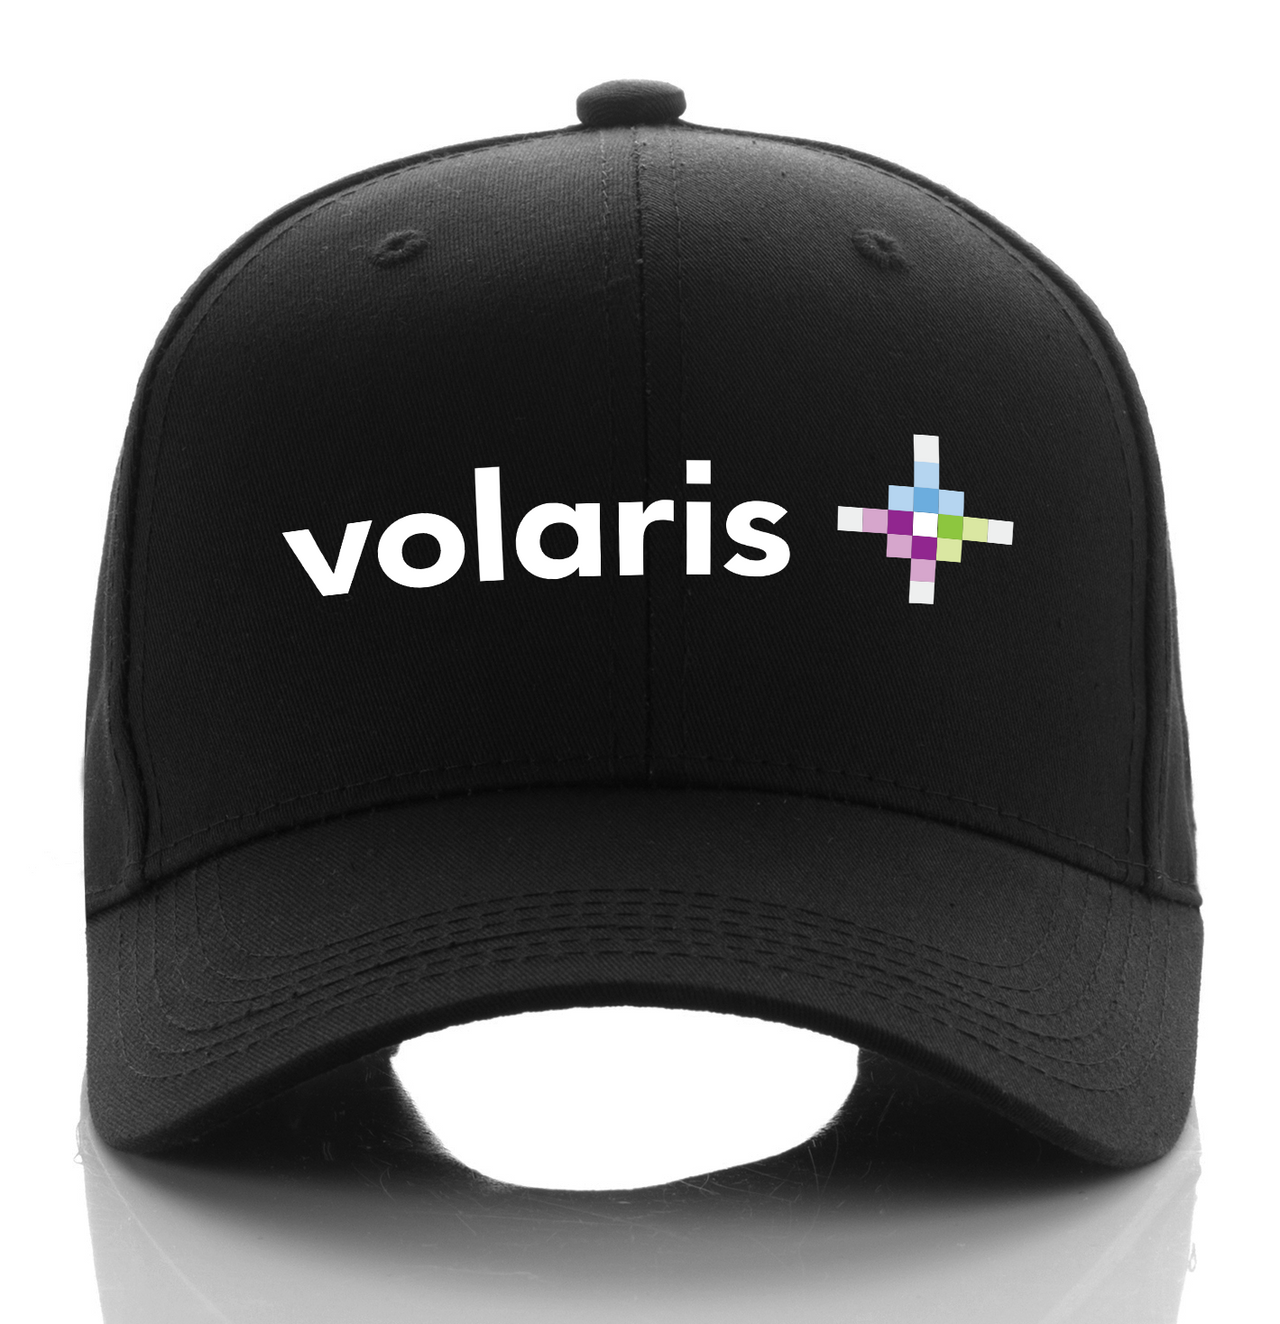 VOLARIS AIRLINE DESIGNED CAP